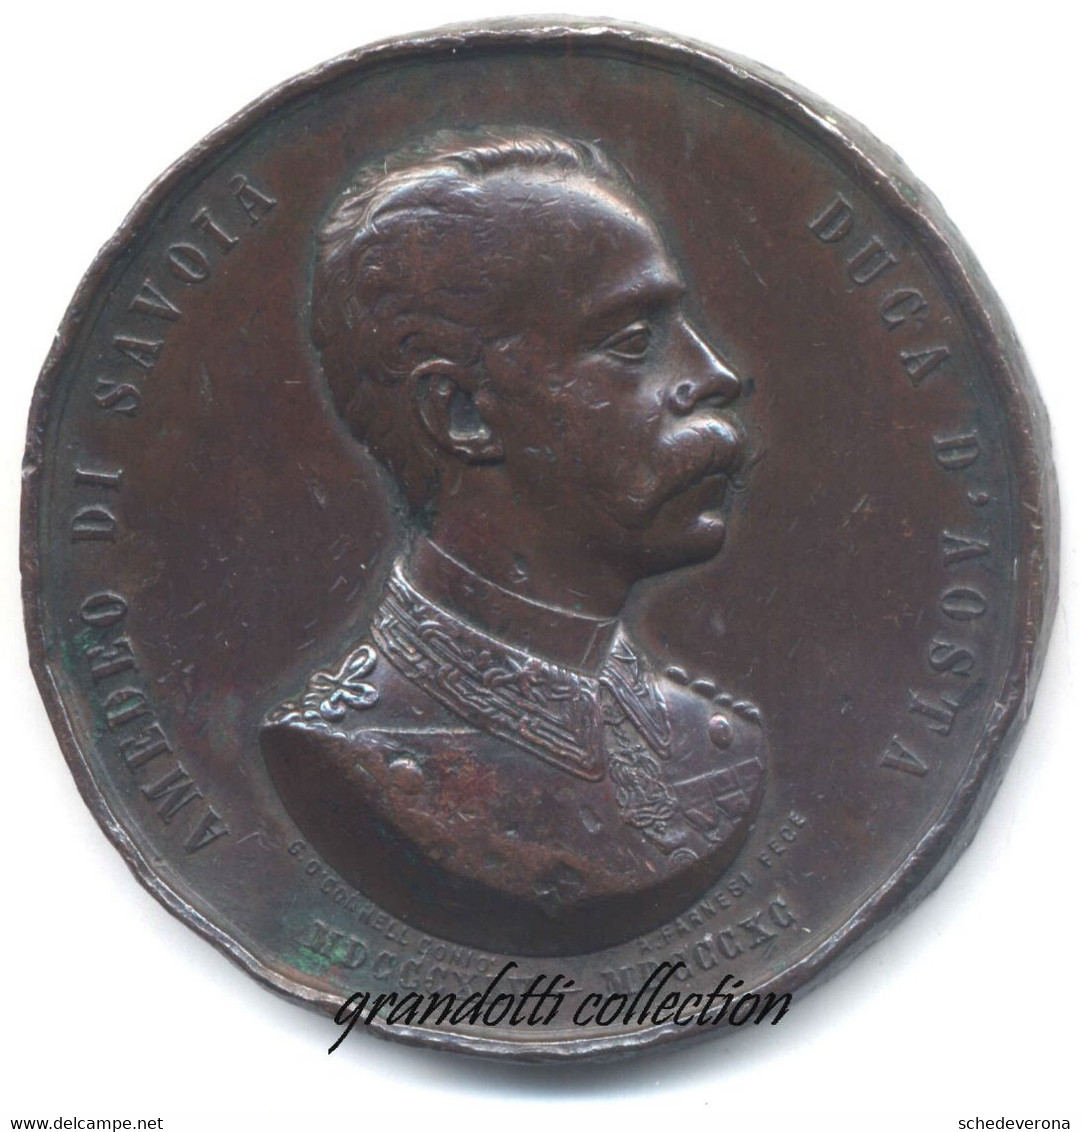 AMEDEO DI SAVOIA DUCA D'AOSTA RICORDO DELLA MORTE 1890 MEDAGLIA ADOLFO FARNESI - Royal/Of Nobility